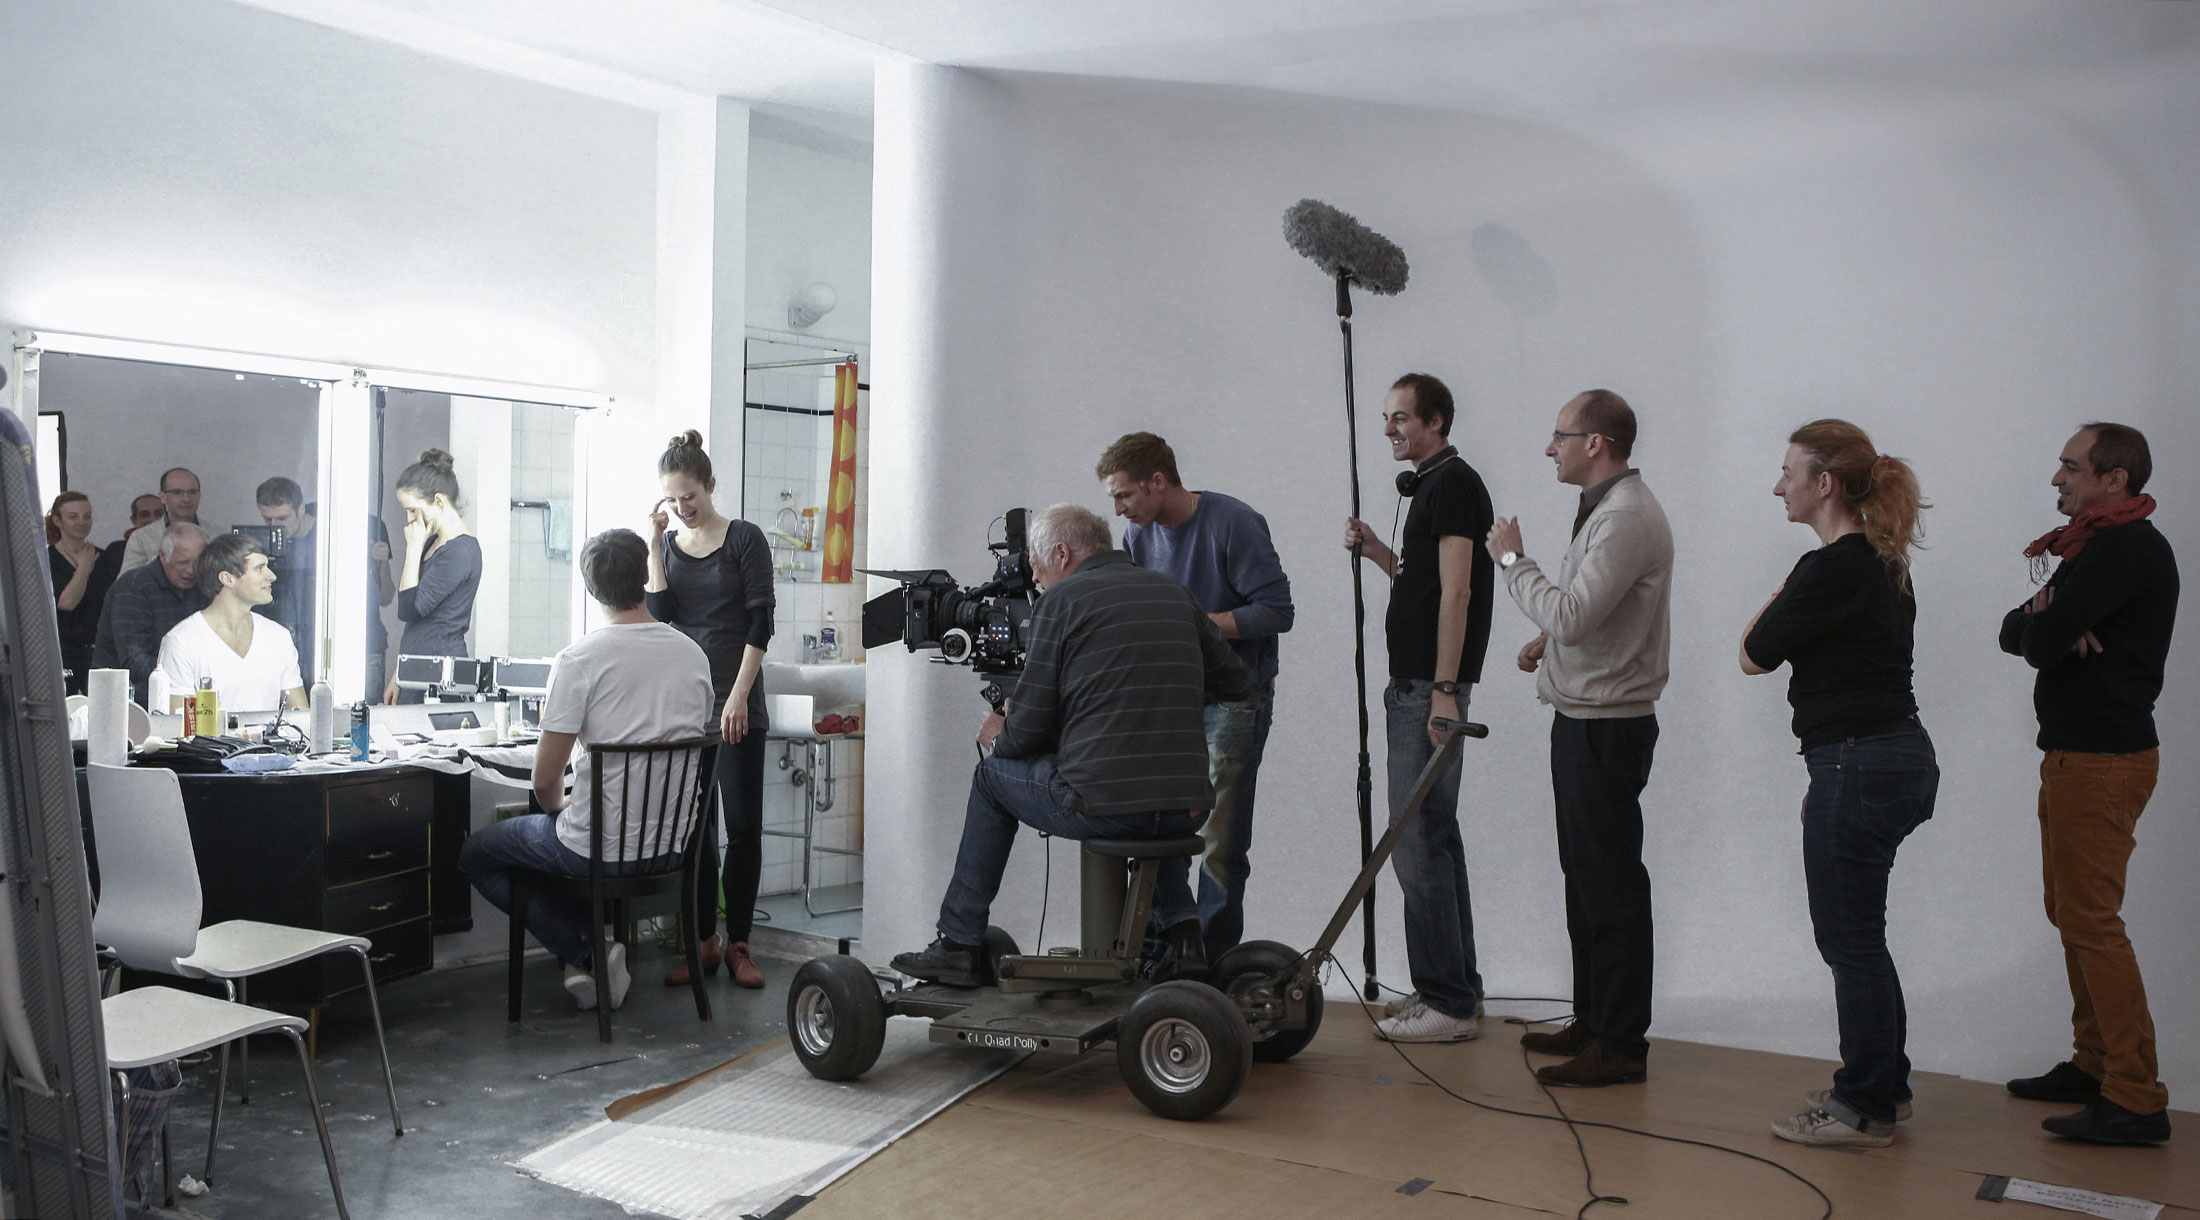 Fotomietstudio Wien für Fotografie, Film, Castings, Coachings, Workshops: FOTOLOFT WIEN